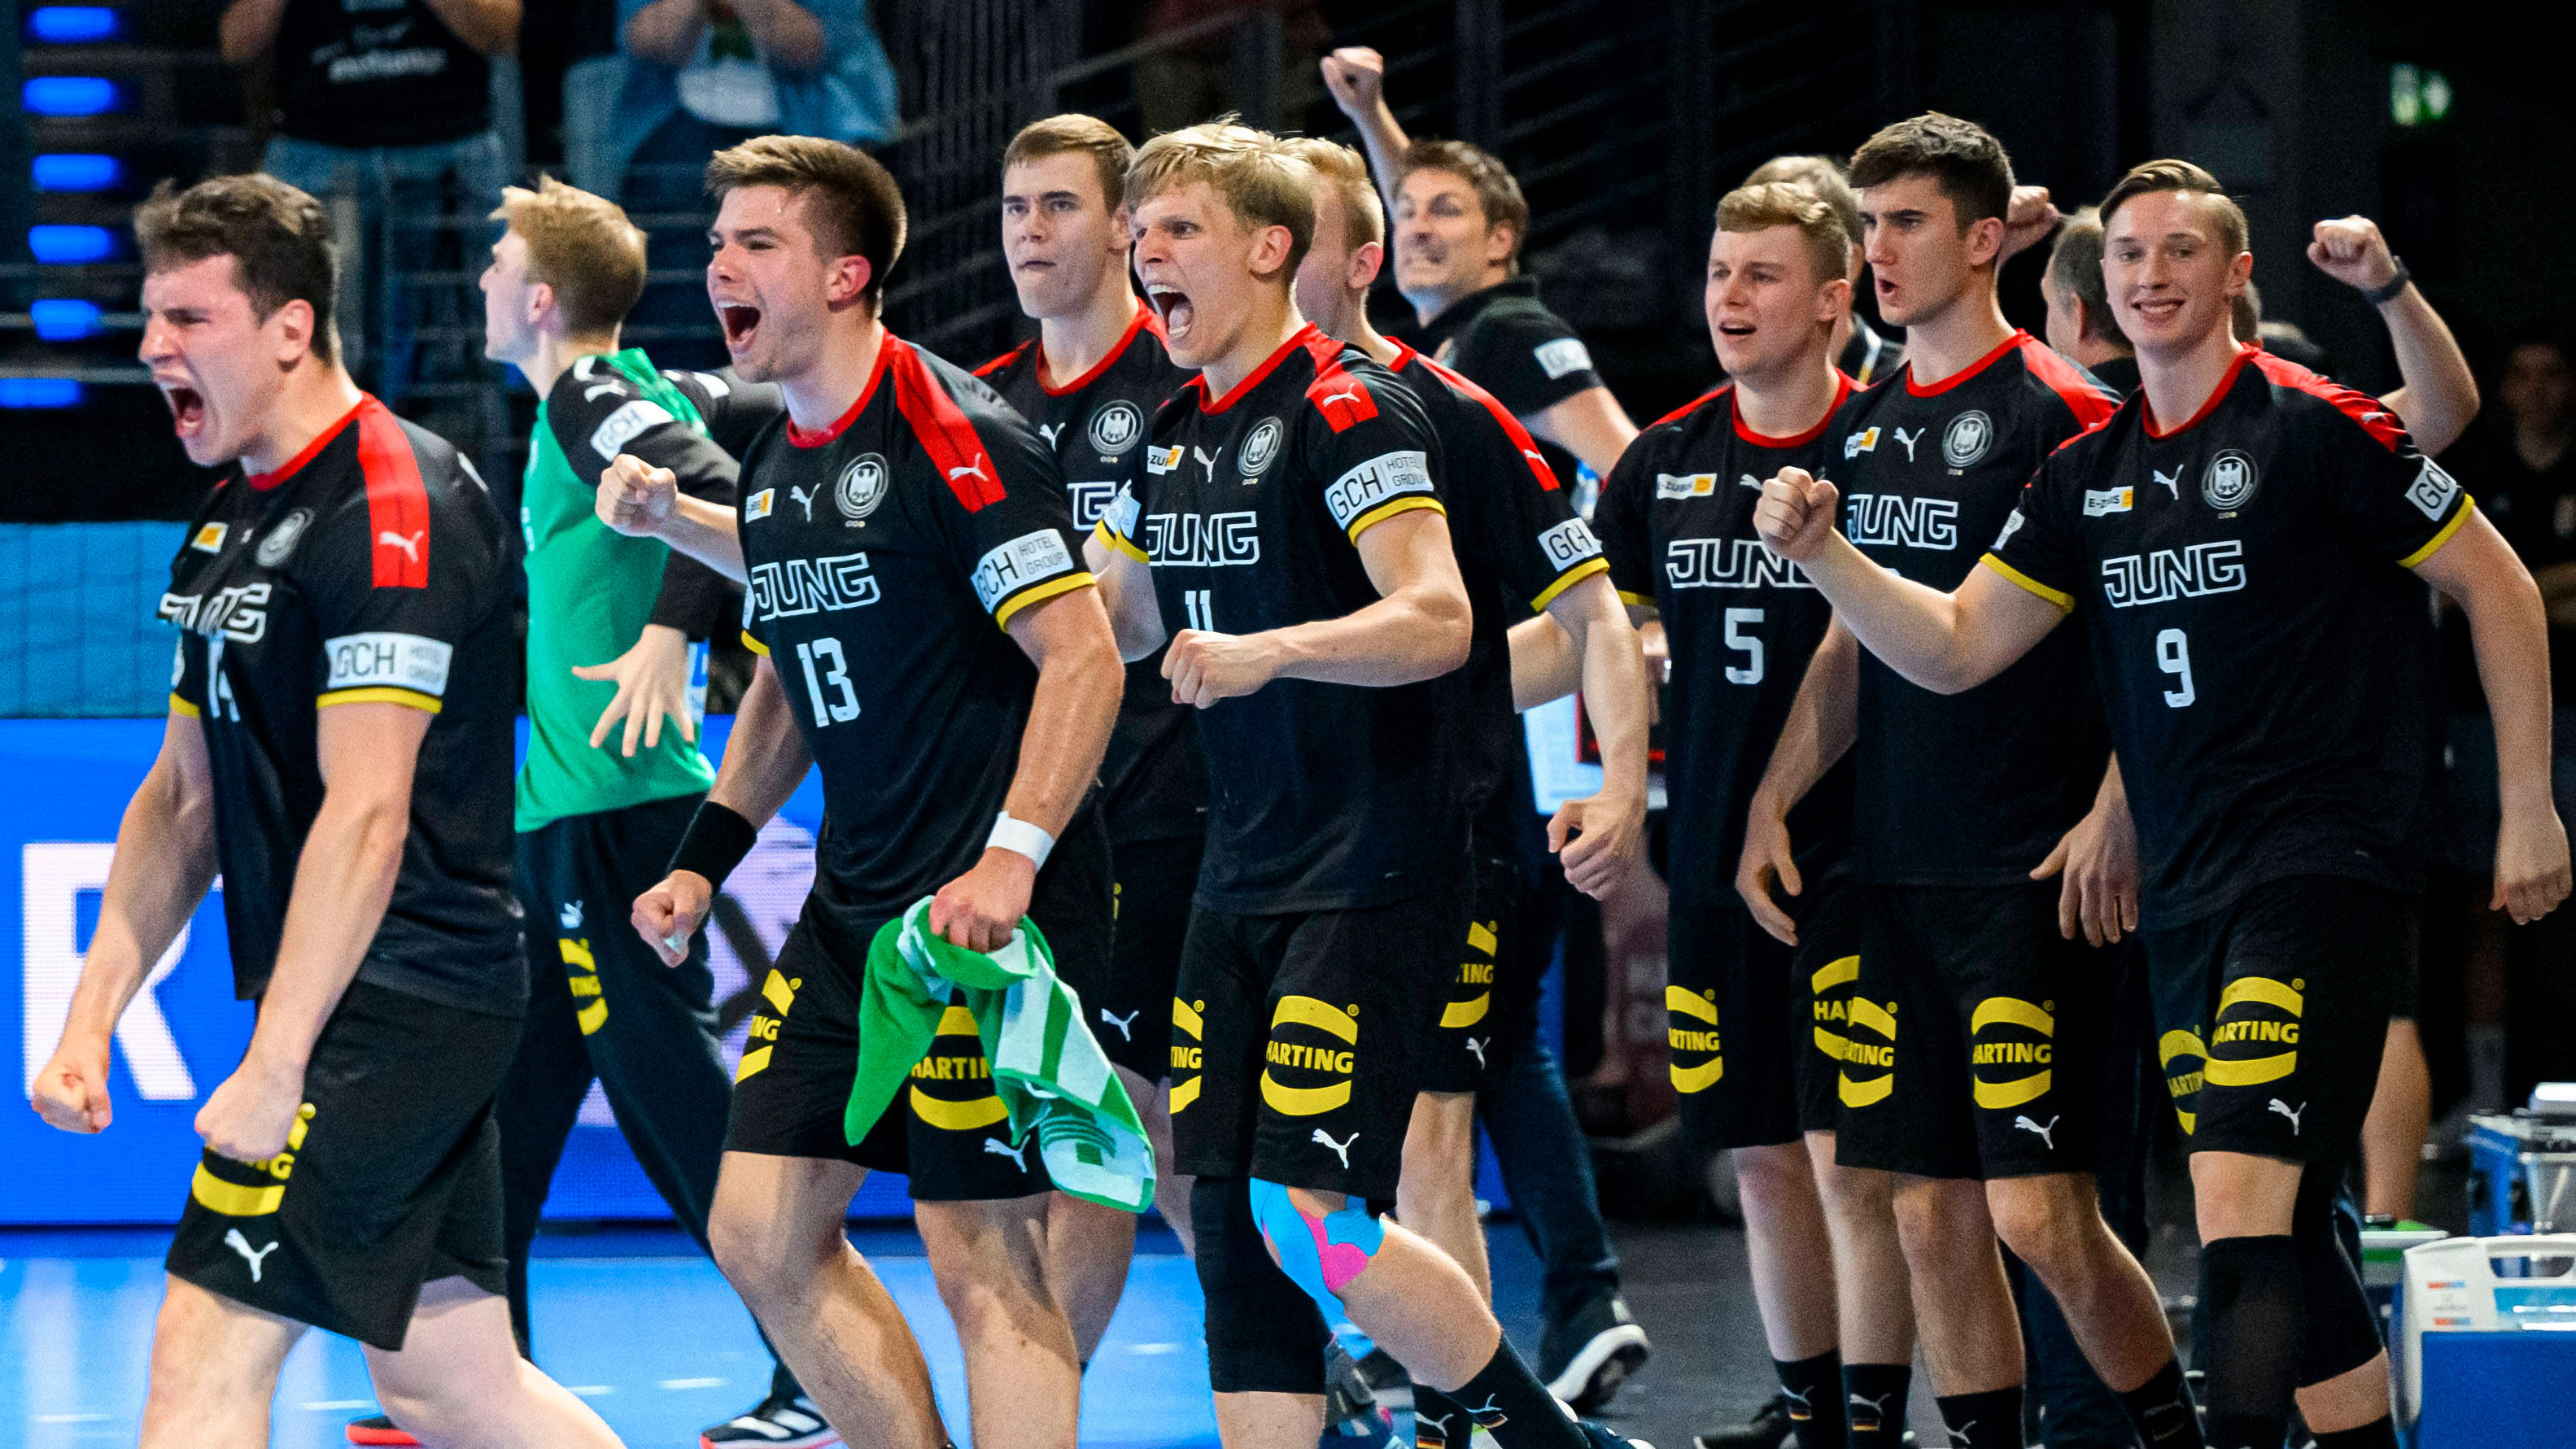 Finalsieg über Ungarn Deutschland gewinnt U21 Handball-Weltmeisterschaft